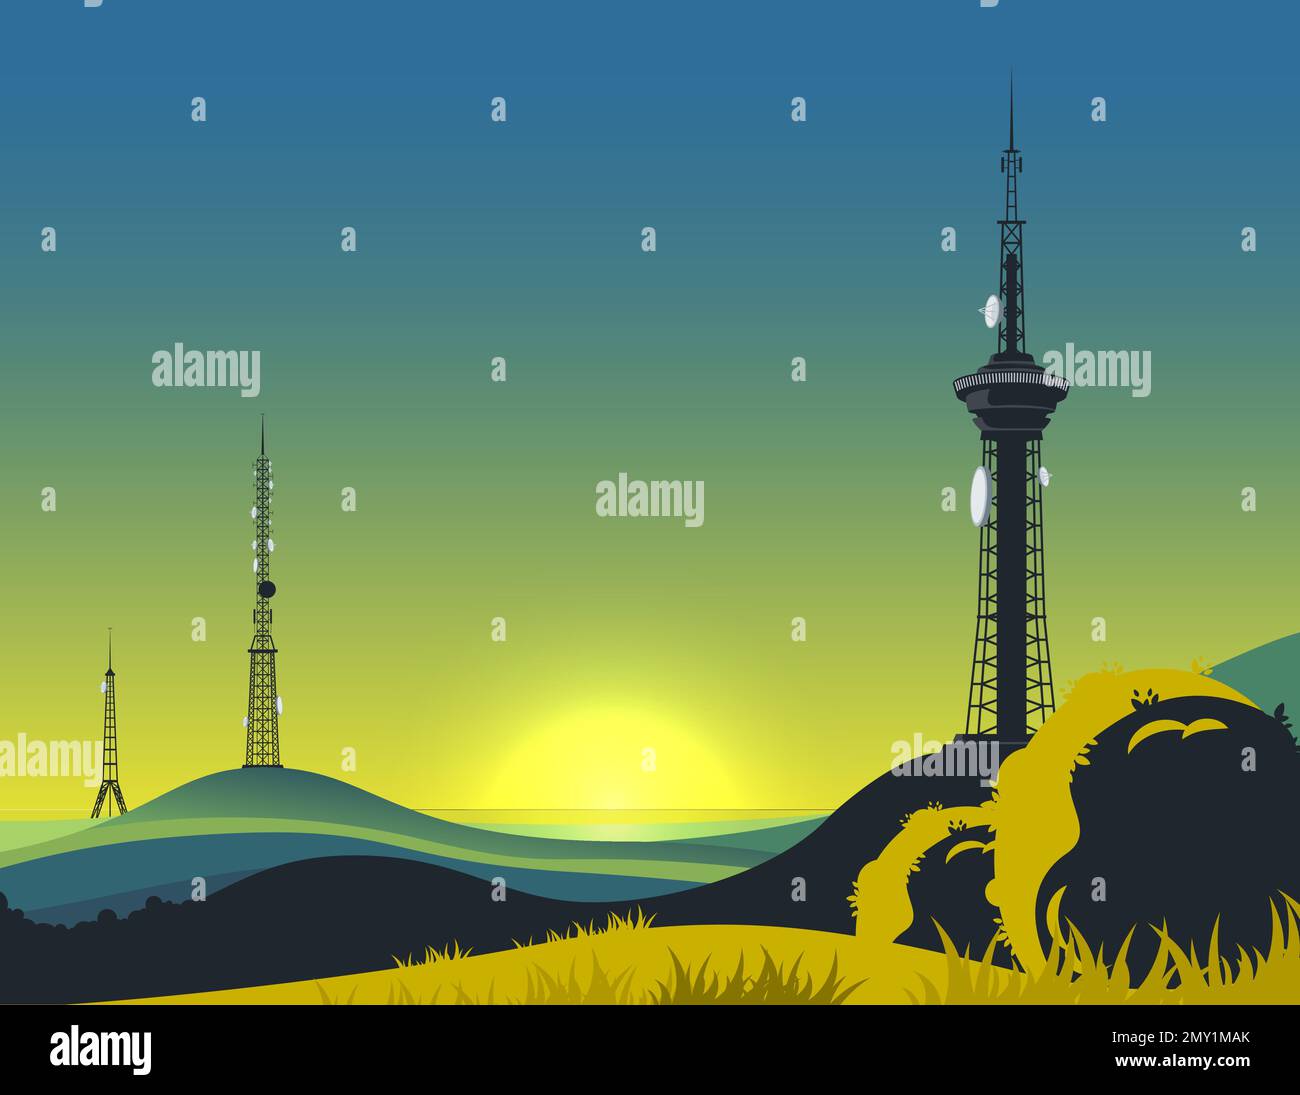 Composition de paysage de tour de communication avec coucher de soleil ciel clair et des tours de télécommunication modernes sur des collines lointaines illustration vectorielle Illustration de Vecteur